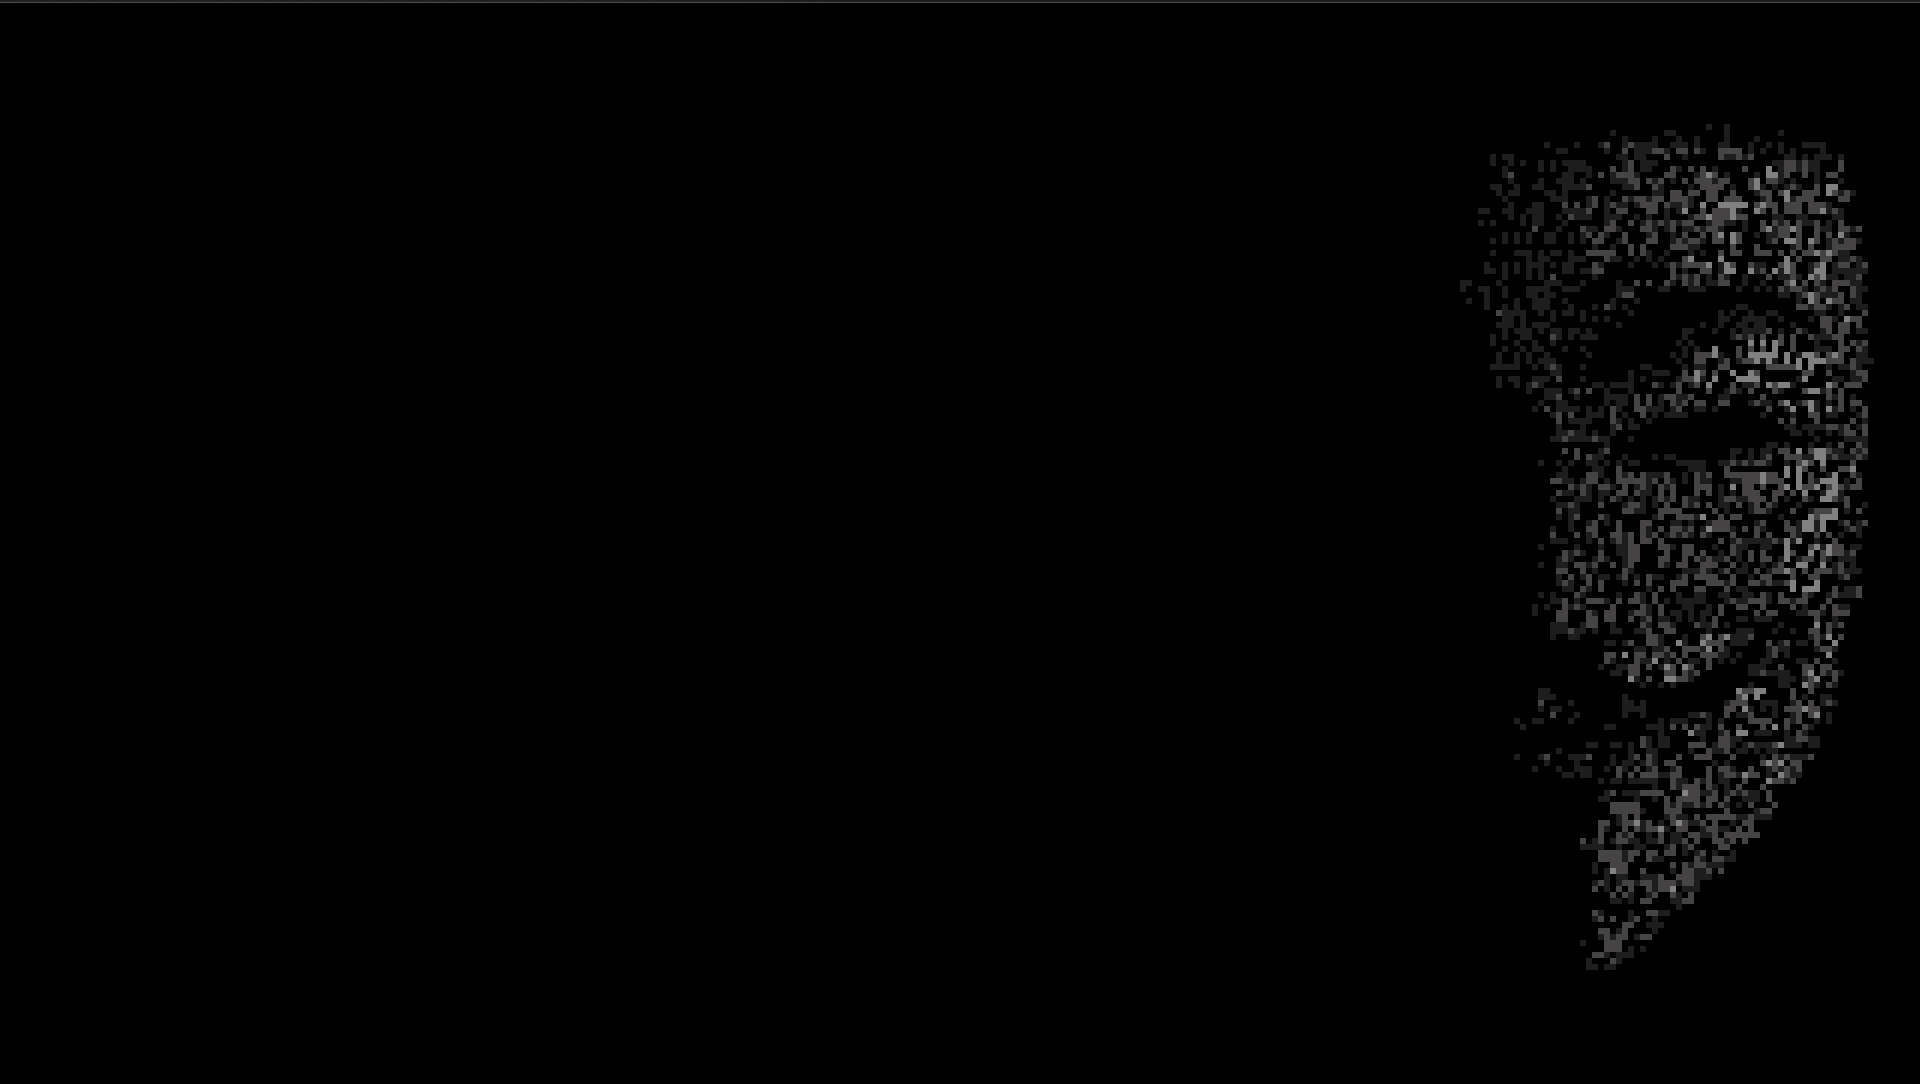 Minimalism Pixelated Black Background Simple Background Guy Fawkes Mask Mask 1920x1084